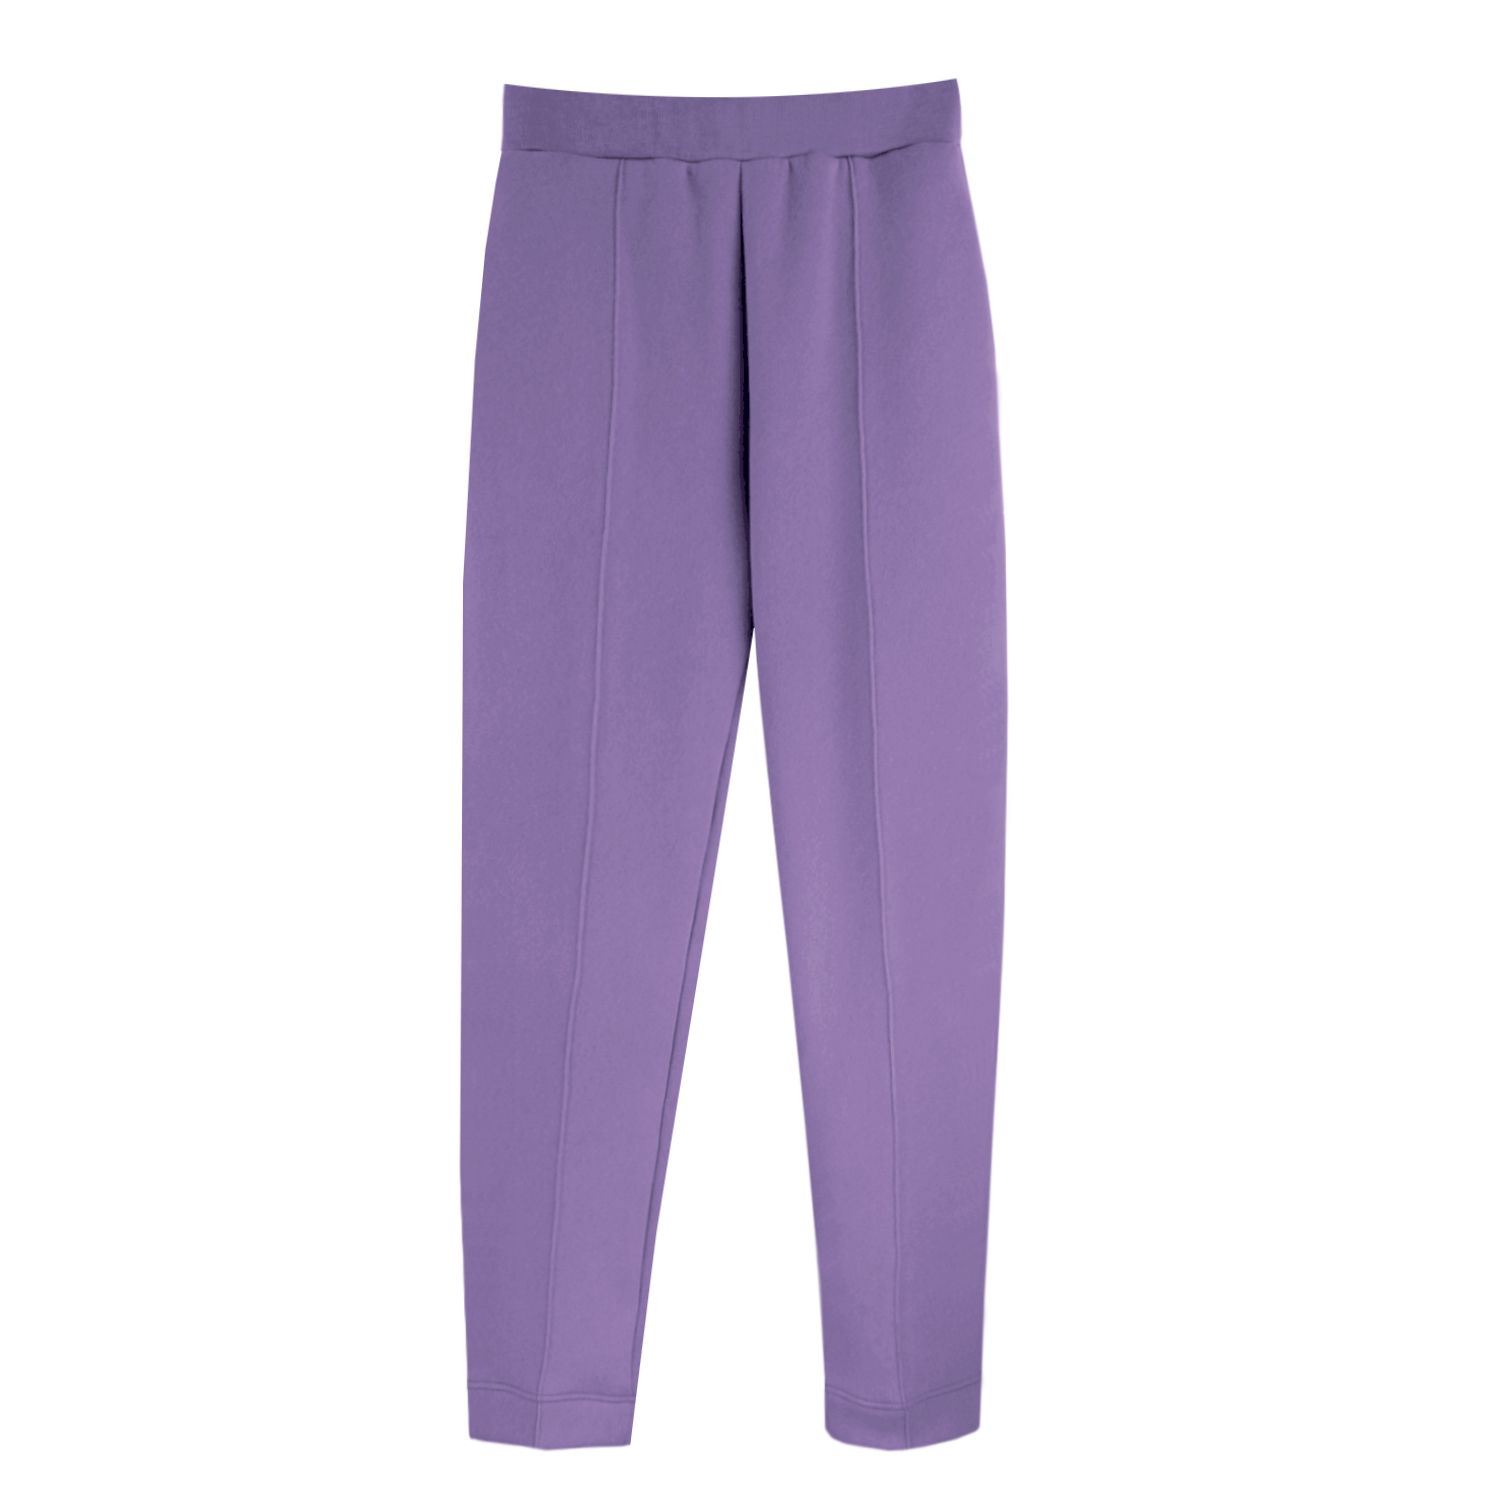 Pantalones púrpuras 2